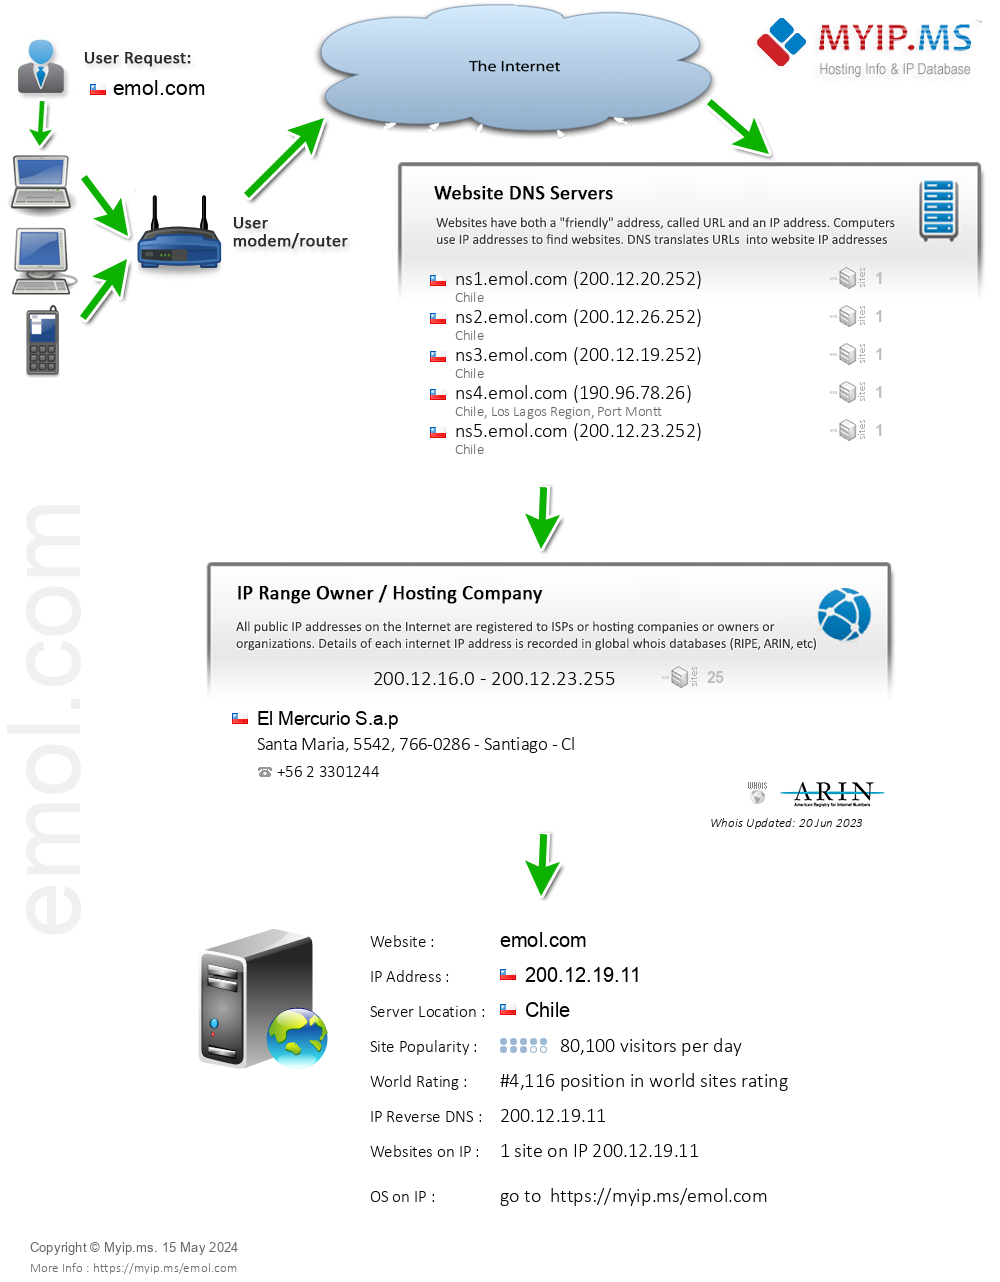 Emol.com - Website Hosting Visual IP Diagram